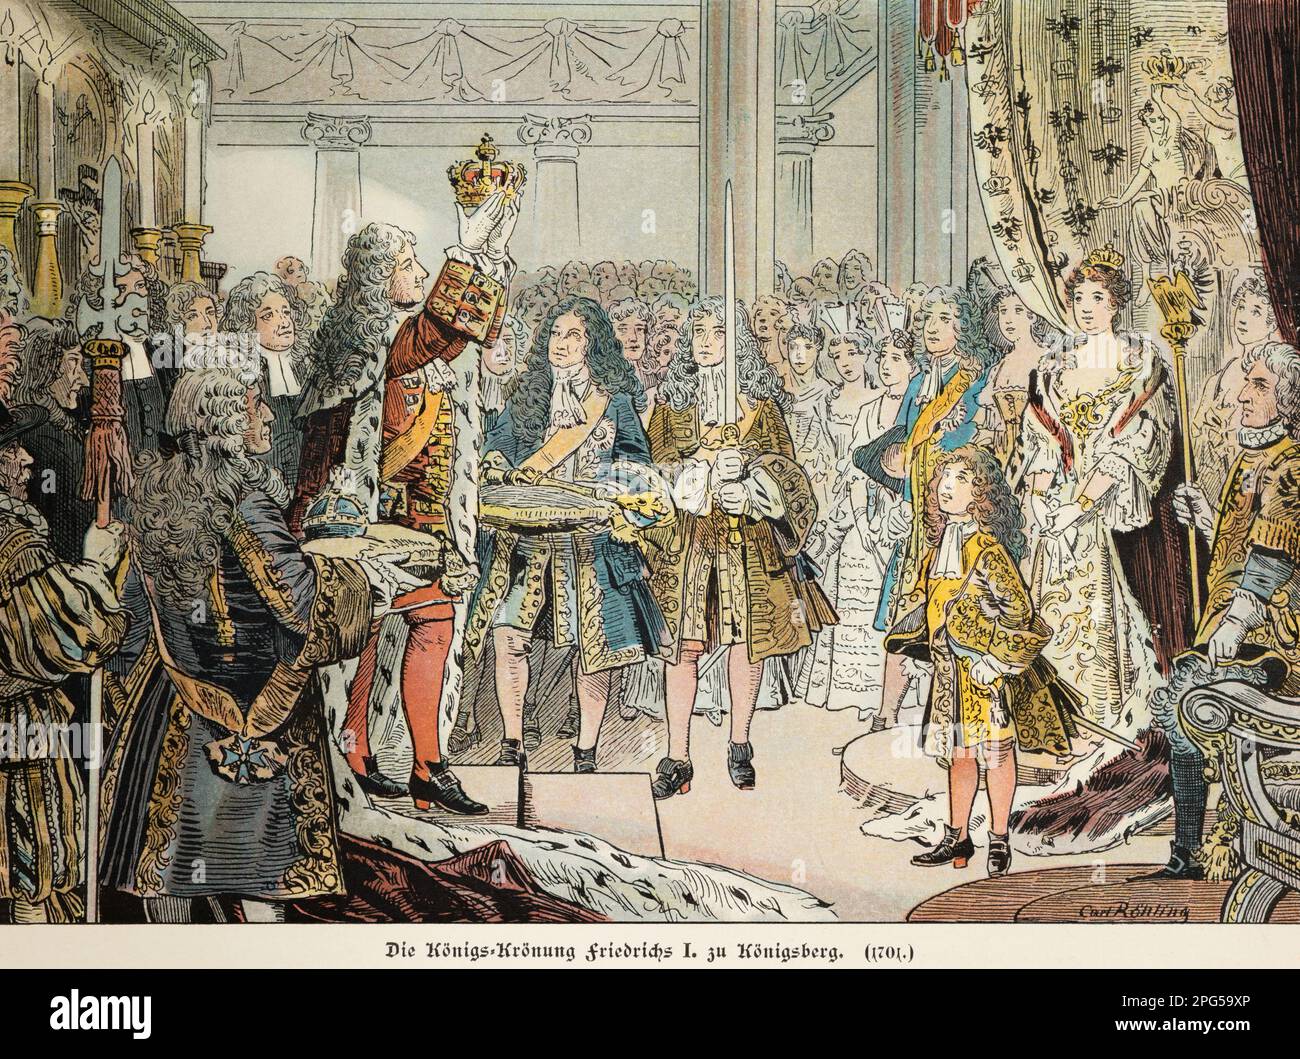 Friedrich i incoronò re a Köningsberg nel 1701, storia degli Hohenzollern, illustrazione storica 1899 Foto Stock